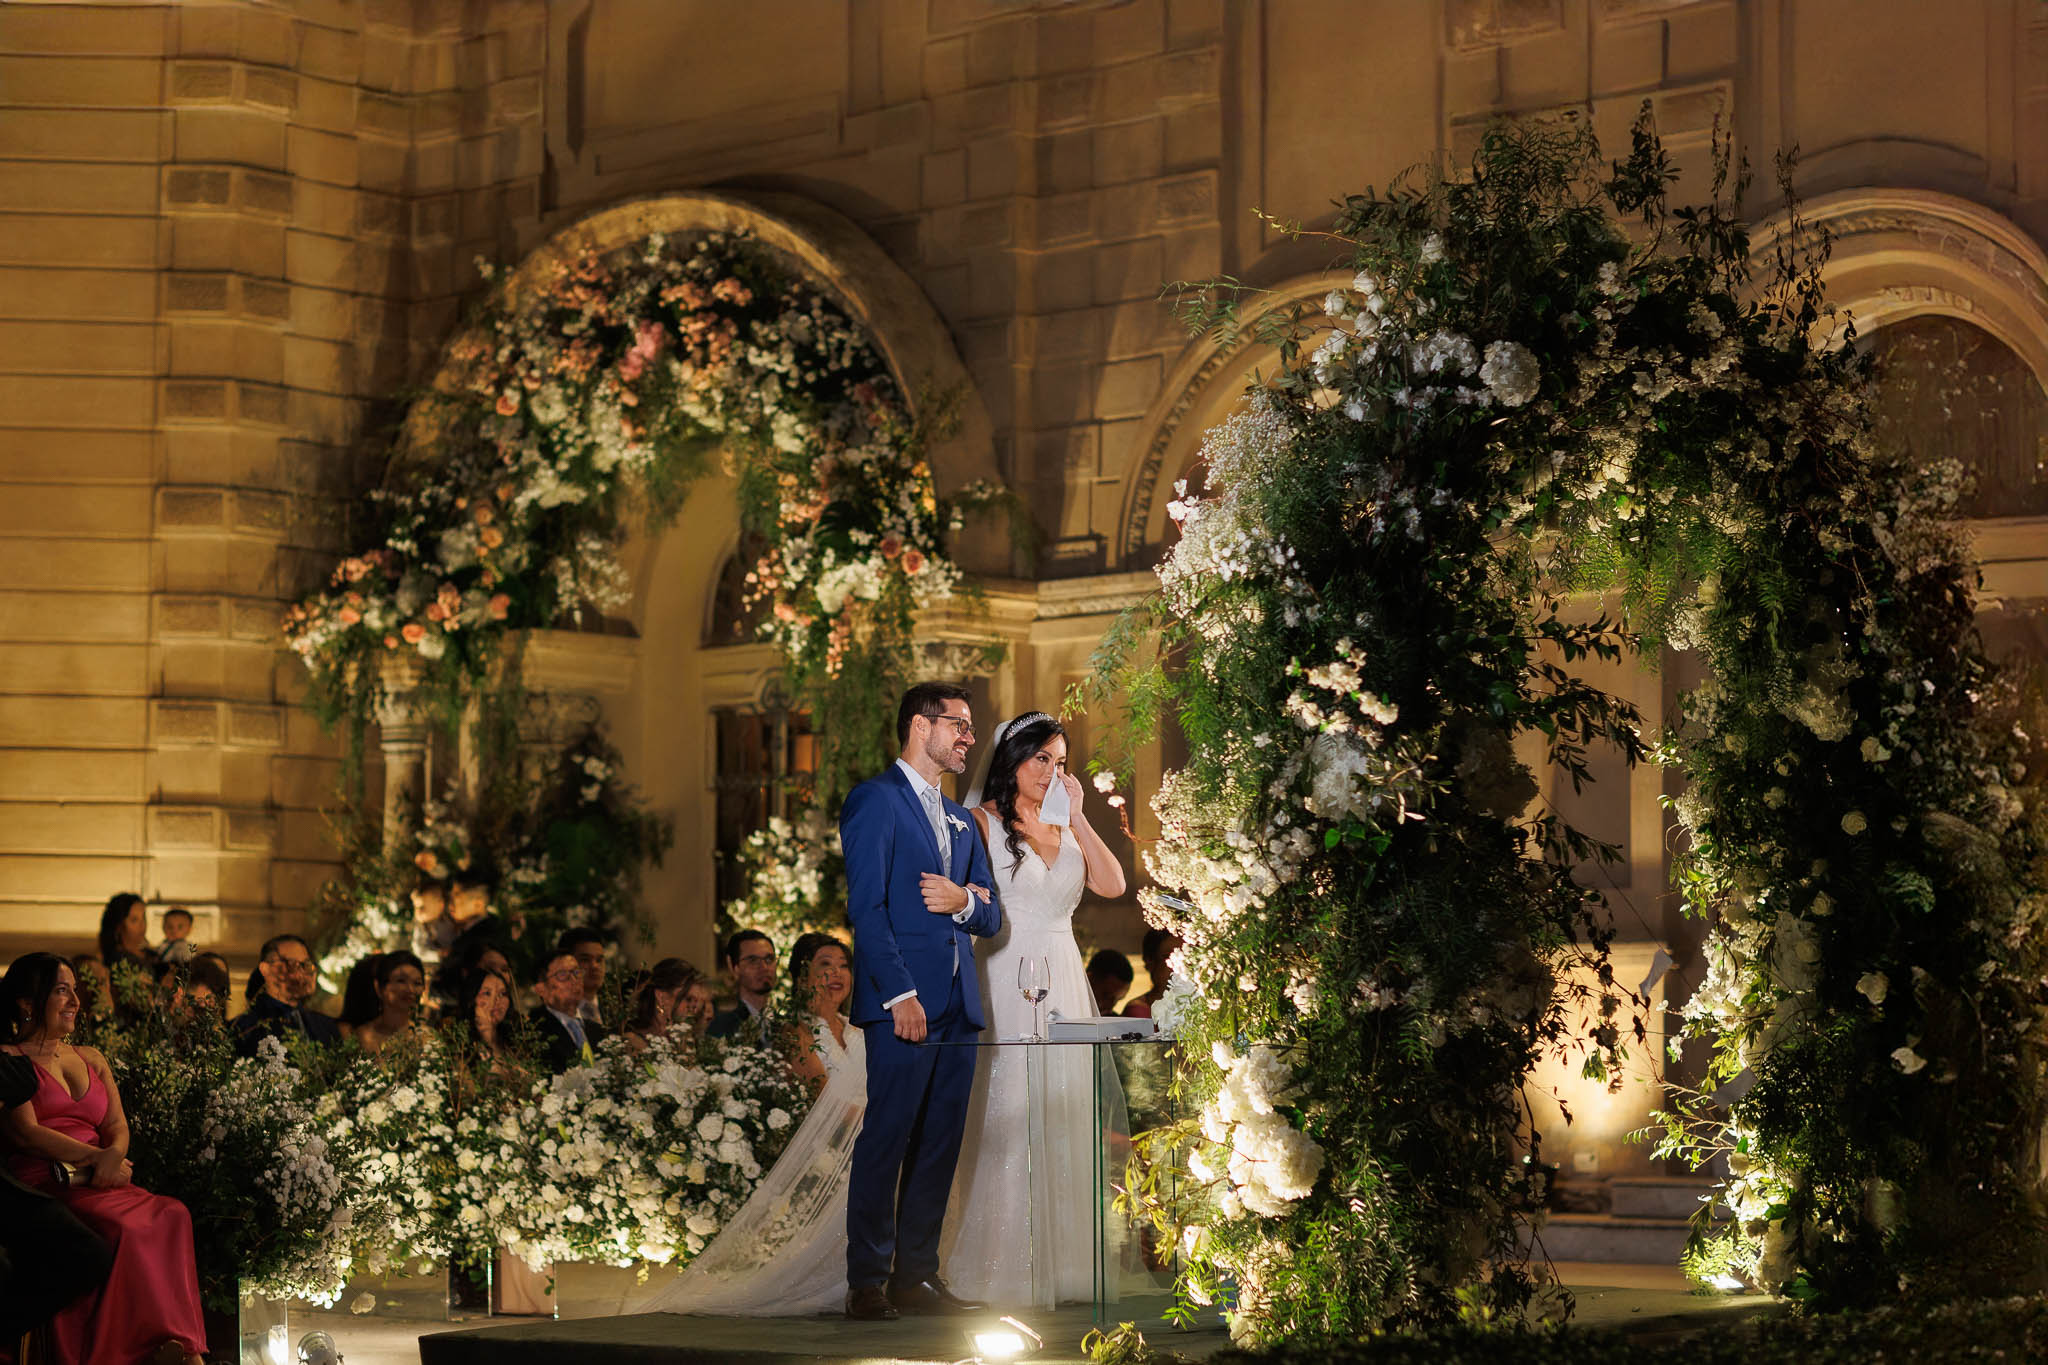 Casamento clássico: emoção na cerimônia - Fotos Emerson Fiuza